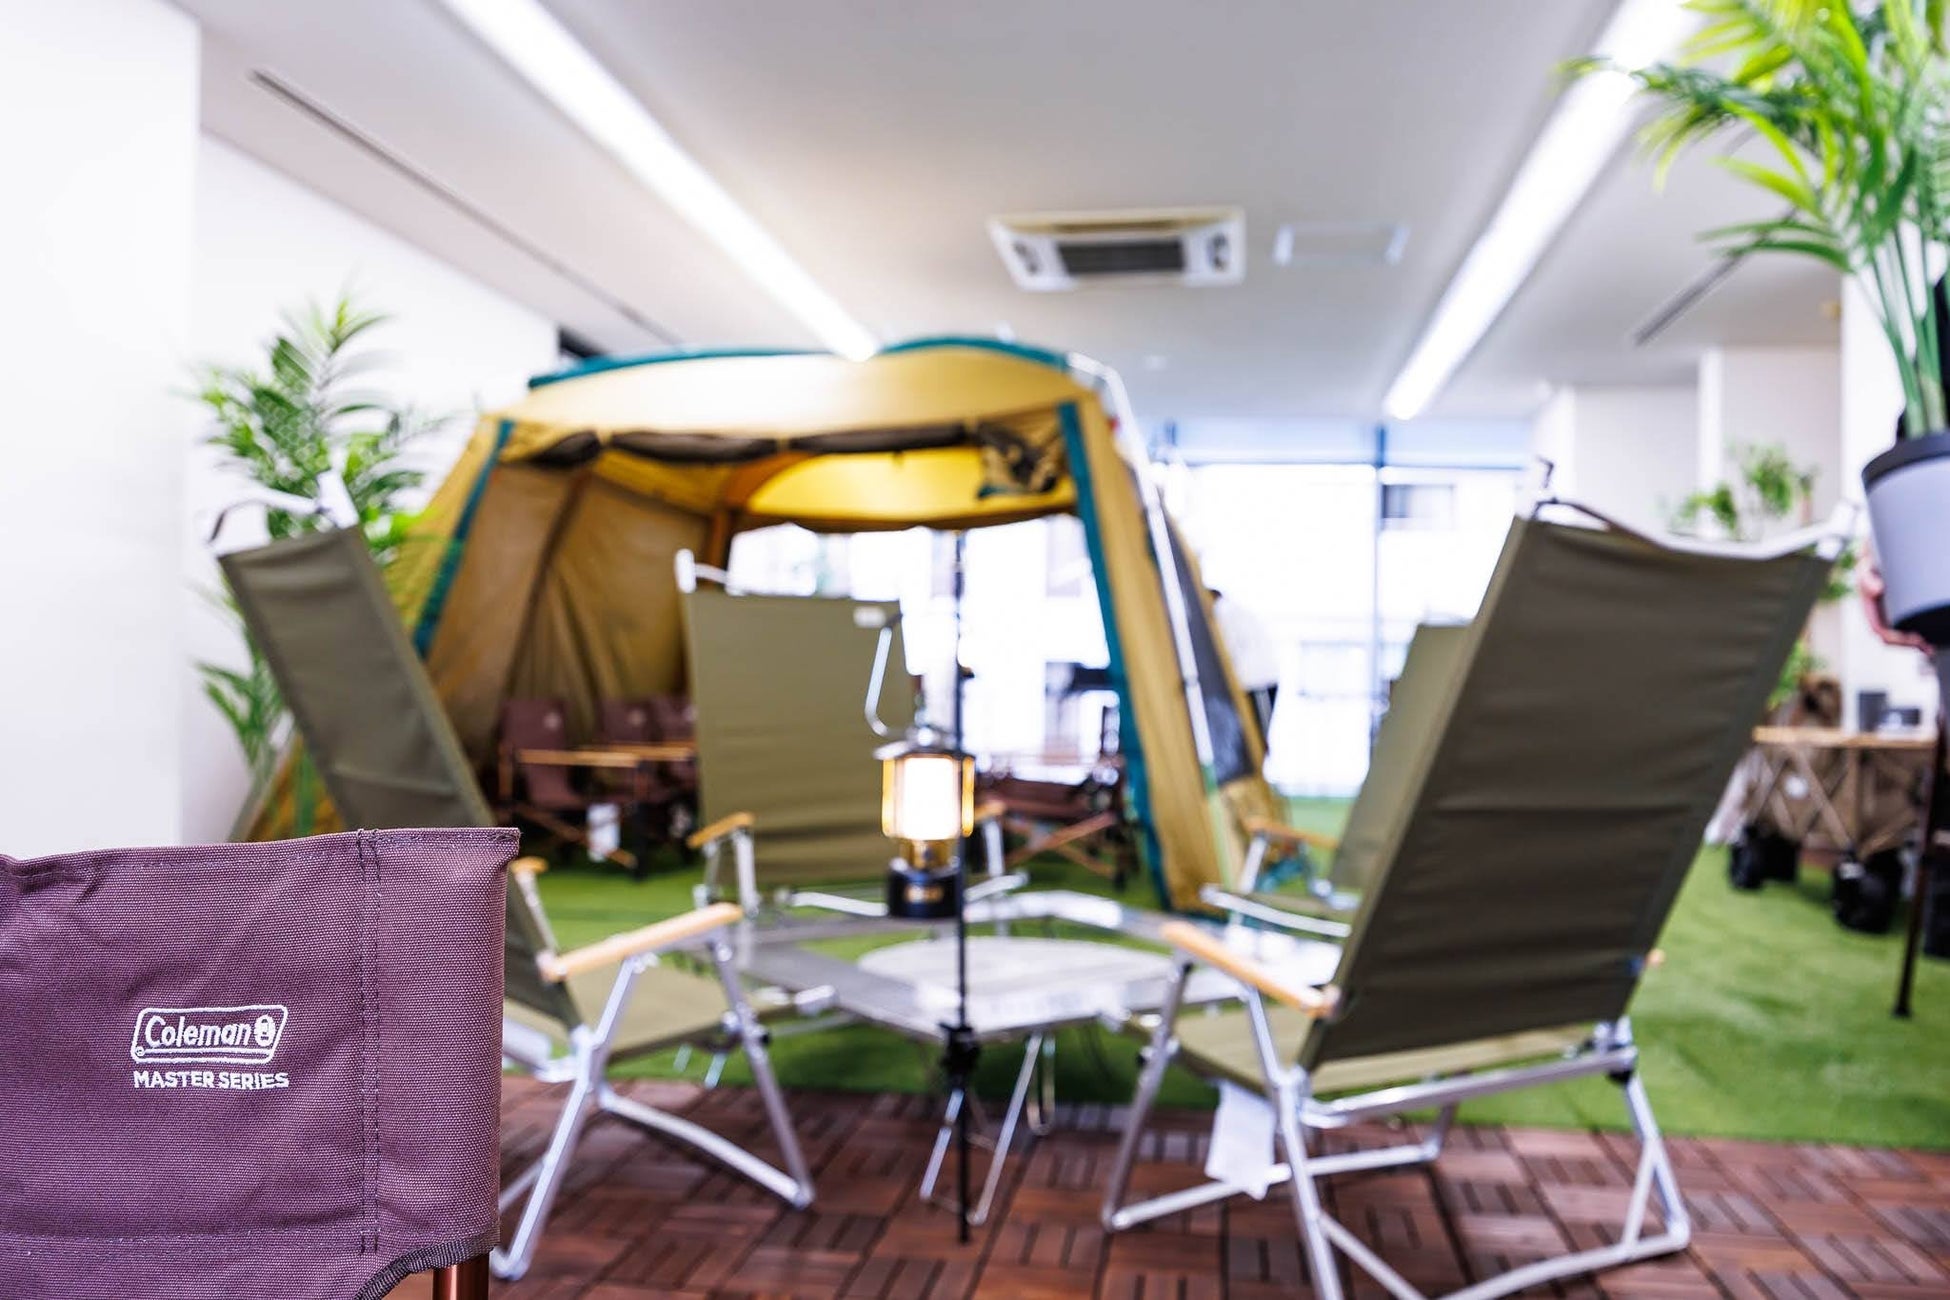 アウトドアファニチャーを使ってオフィスの空室や施設の空き空間を有効活用する「Camping Office Project」の試験運用を11月より開始のサブ画像3